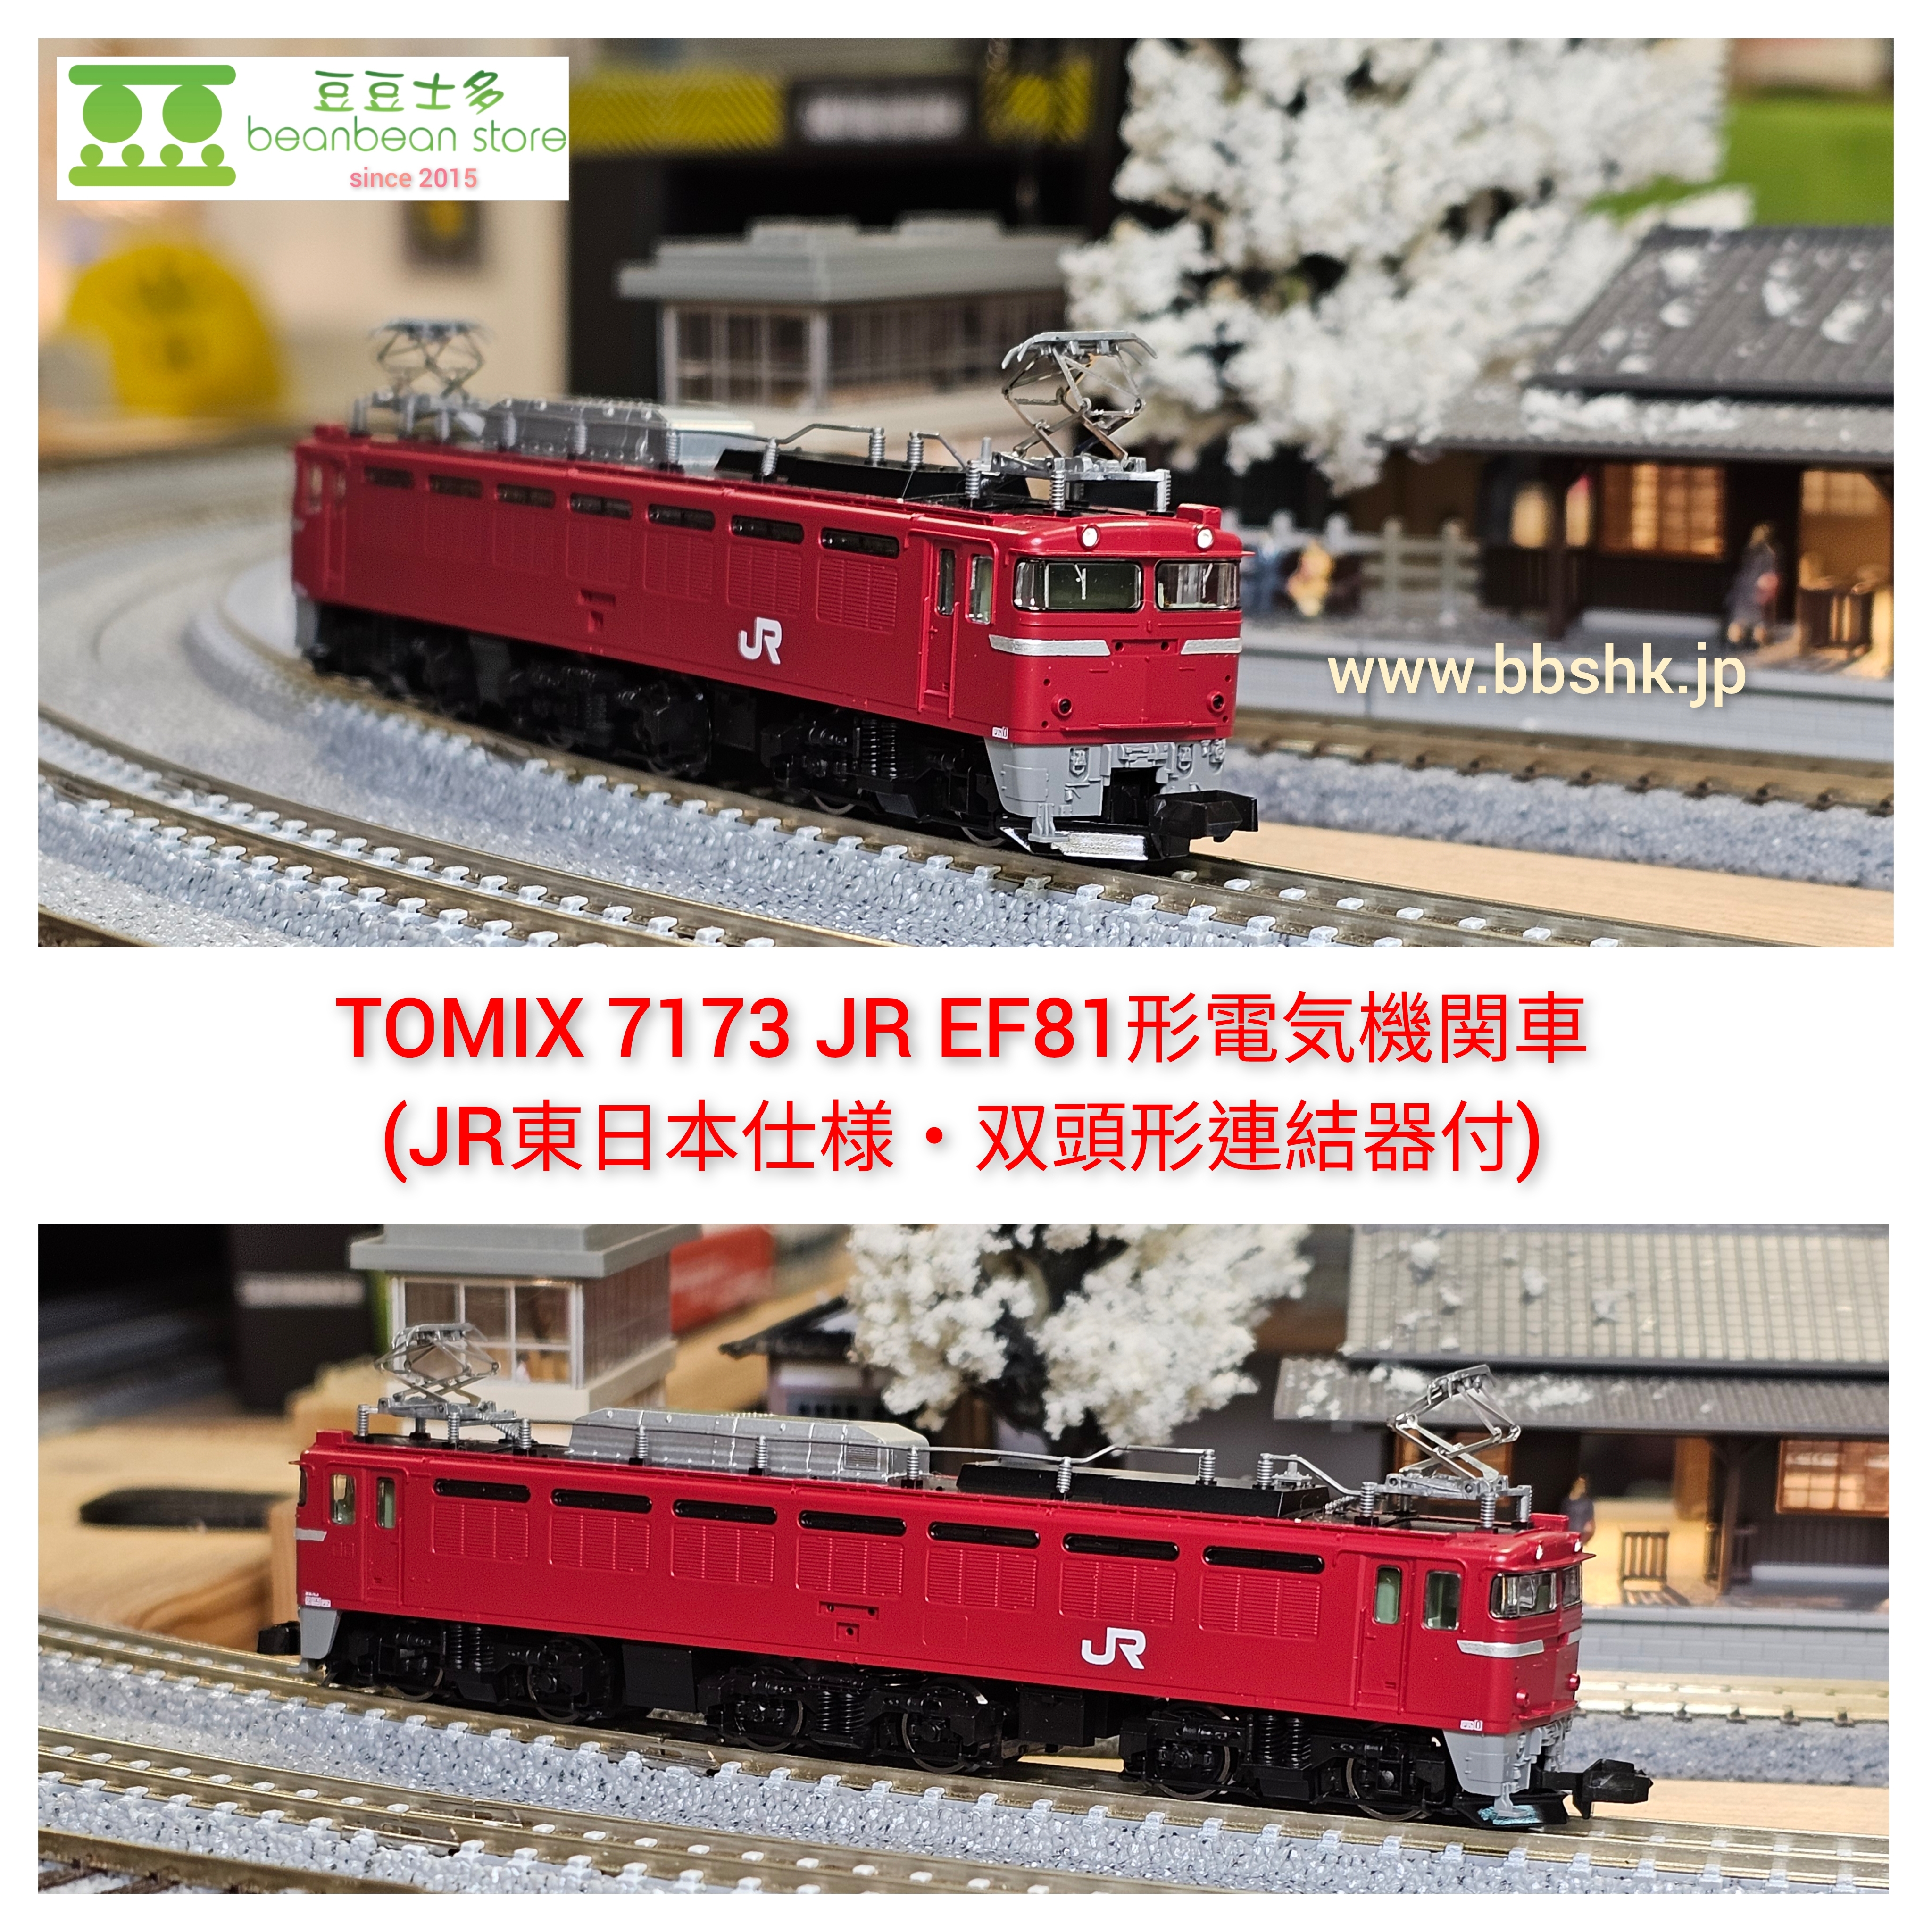 TOMIX 7173 JR EF81形電気機関車 (JR東日本仕様・双頭形連結器付)